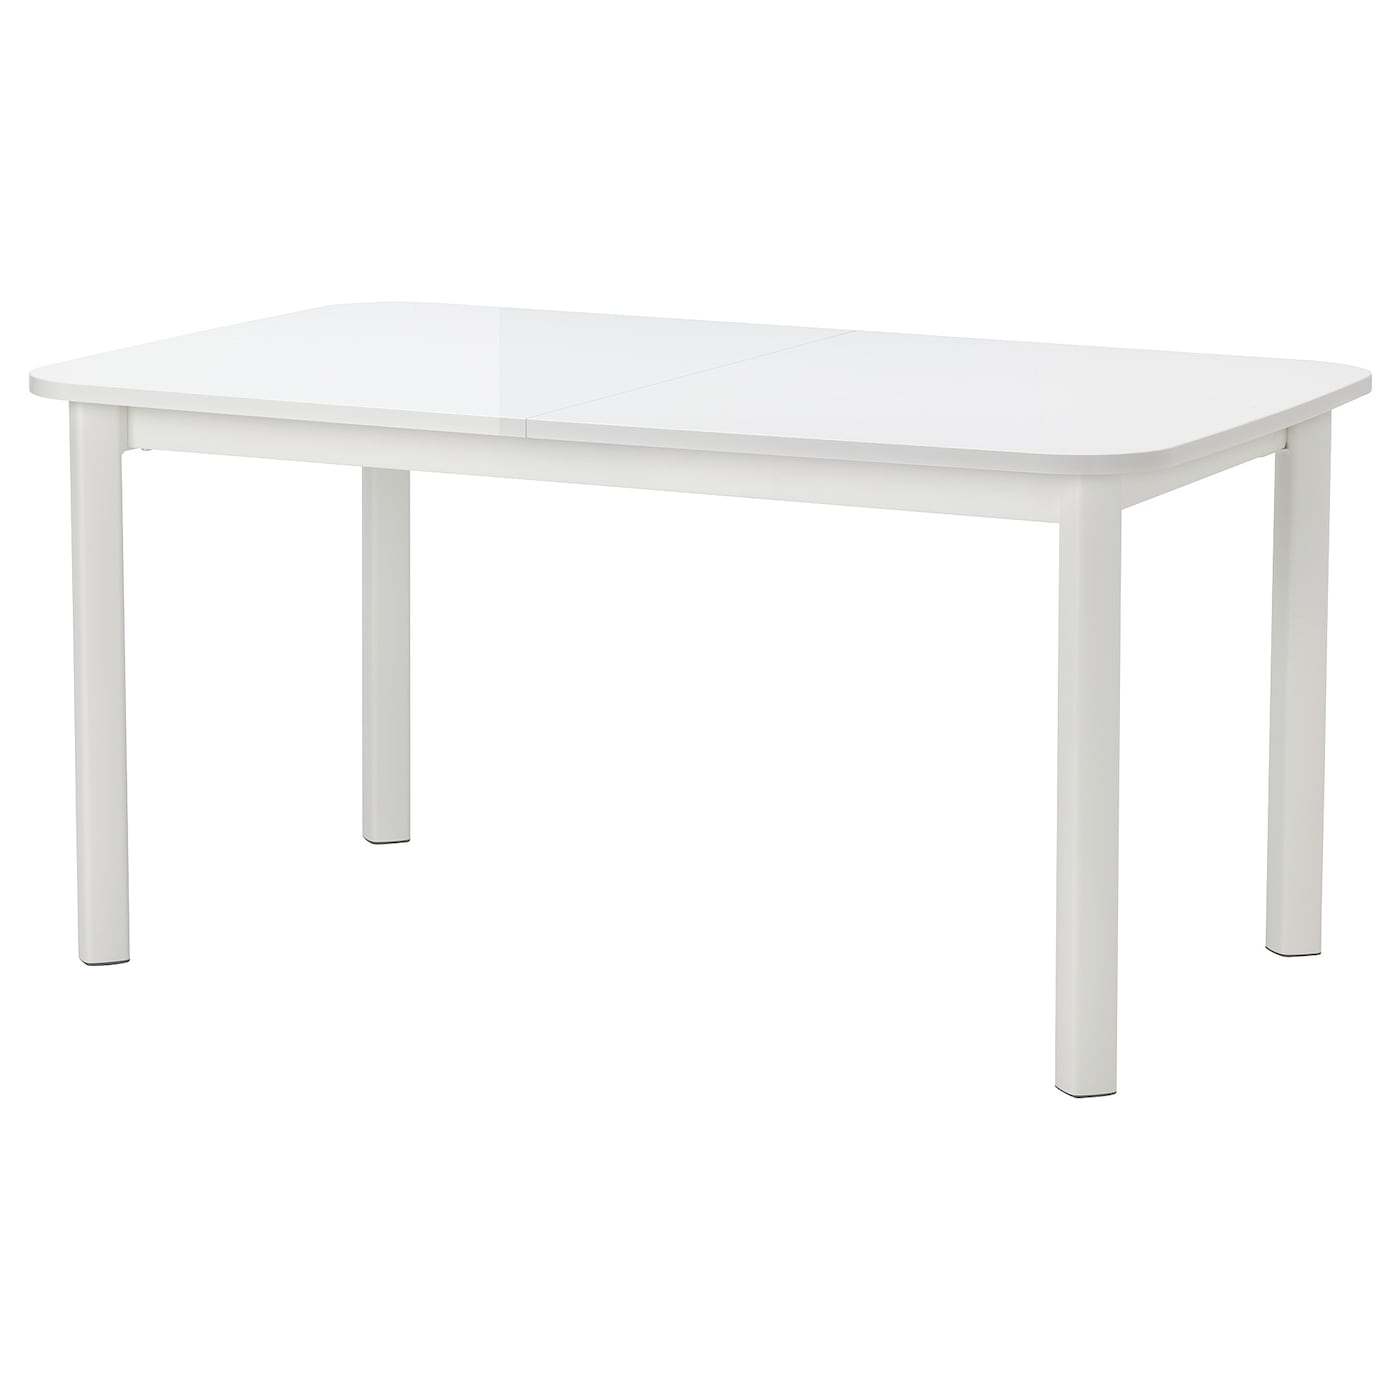 Раздвижной обеденный стол - IKEA STRANDTORP, 260/205х95х75 см, белый, СТРАНДТОРП ИКЕА